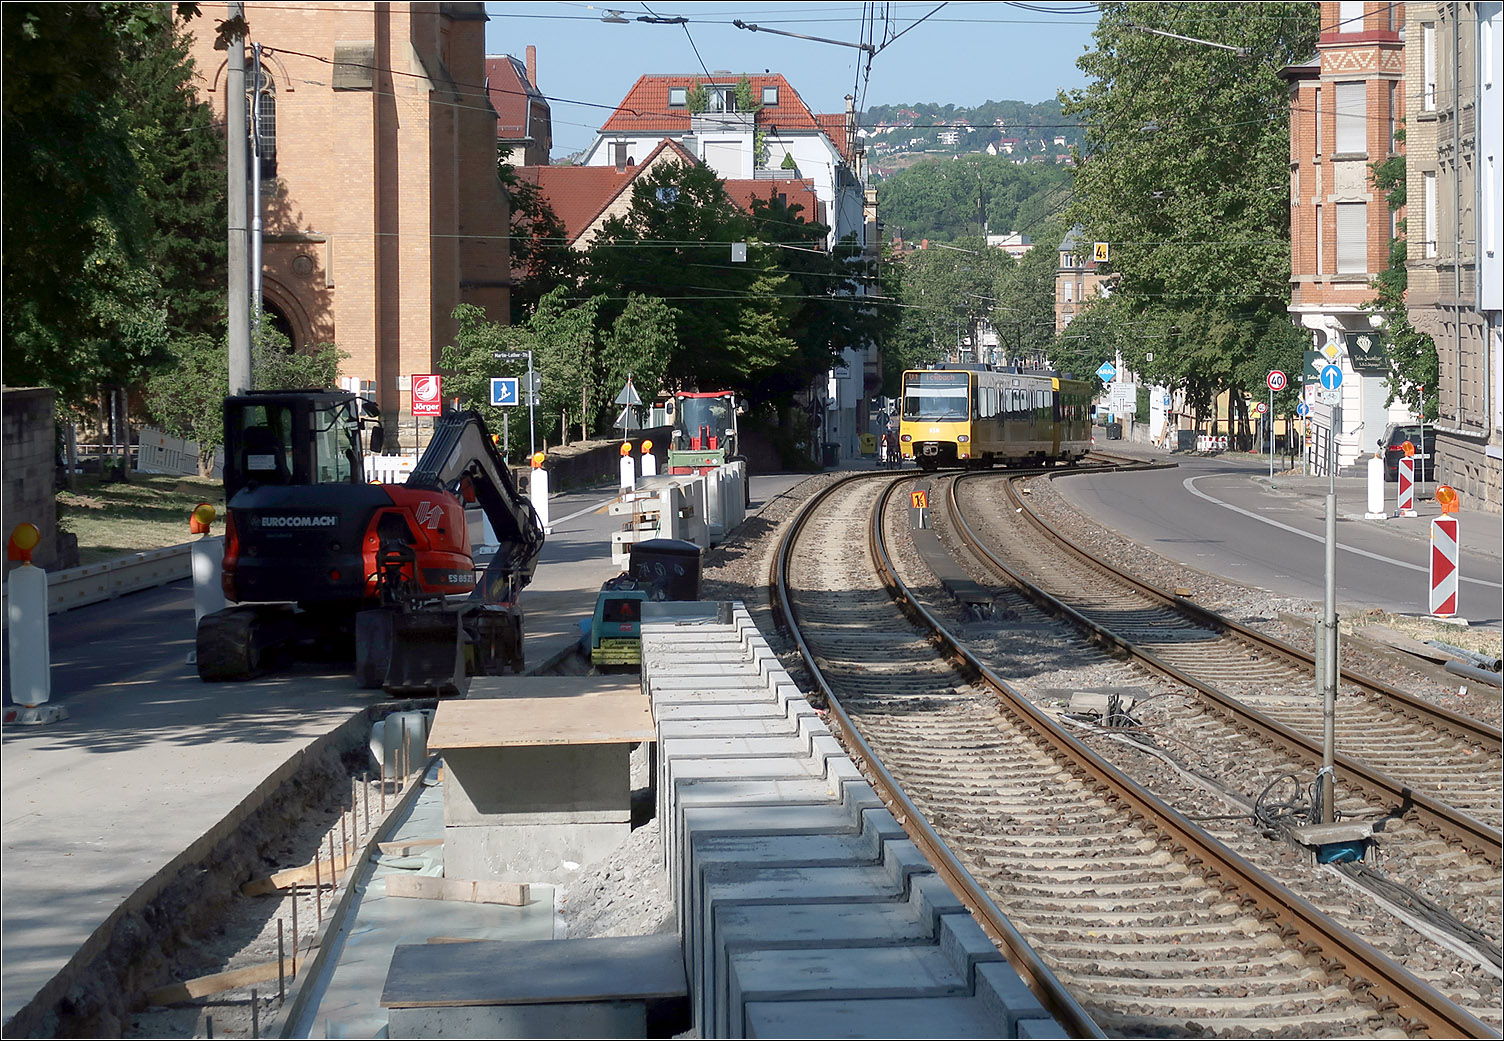 Zukünftig lange Züge auf der U1 - 

Neben den Haltestellen Fellbach Schwabenlandhalle und Fellbach Höhenstraße ist auch bei der Haltestelle Uff-Kirchhof in Bad Cannstatt die Verlängerung der Bahnsteige auf 80 Meter in Bau. Auch die alten Bahnsteigabschnitte werden dabei erneuert. Hier die Haltestelle Uff-Kirchhof.

Ein weiteres Projekt bei er Stadtbahn ist aktuell die Verlängerung der Linie U5 in Leinfelden um eine Haltestelle. Dieser Abschnitt ging in Bau.

Zum Fahrplanwechsel im Dezember wird auch der wegen Stuttgart 21 neu gebaute Tunnelabschnitt zwischen Hauptbahnhof (Arnulf-Klett-Platz) und Staatsgalerie in Betrieb. Seit 1962 bis heute gab es bei der SBB durchgehend bis heute immer irgendwo im Netz ein Tunnelprojekt, also über 51 Jahre hinweg. Aktuell gibt es das erste Mal keine konkrete Planung für einen weitere Tunnelstrecke. 
Dennoch geht der Tunnelbau in Stuttgart weiter: die meisten Tunnels von Stuttgart 21 gehen ihrer Fertigstellung entgegen, aber weiter sollen folgen. Die sogenannte P-Option soll die Bahnstrecke aus Richtung Feuerbach mit dem Tunnel aus Bad Cannstatt verbinden um so flexibler im Betrieb sein zu können. Die Gäubahn soll mittels eines 11 km langen Tunnel an den Flughafen-Fernbahnhof angeschlossen um den betrieblich ungünstigen Mischverkehr mit der S-Bahn zu vermeiden und auch aufgrund des Deutschlandtaktes. Dieser macht aber auch den Bau eines langen Tunnels vom Tunnel Feuerbach bis zur Schnellfahrstrecke in Höhe der Autobahn A81 notwendig.

10.07.2023 (M)